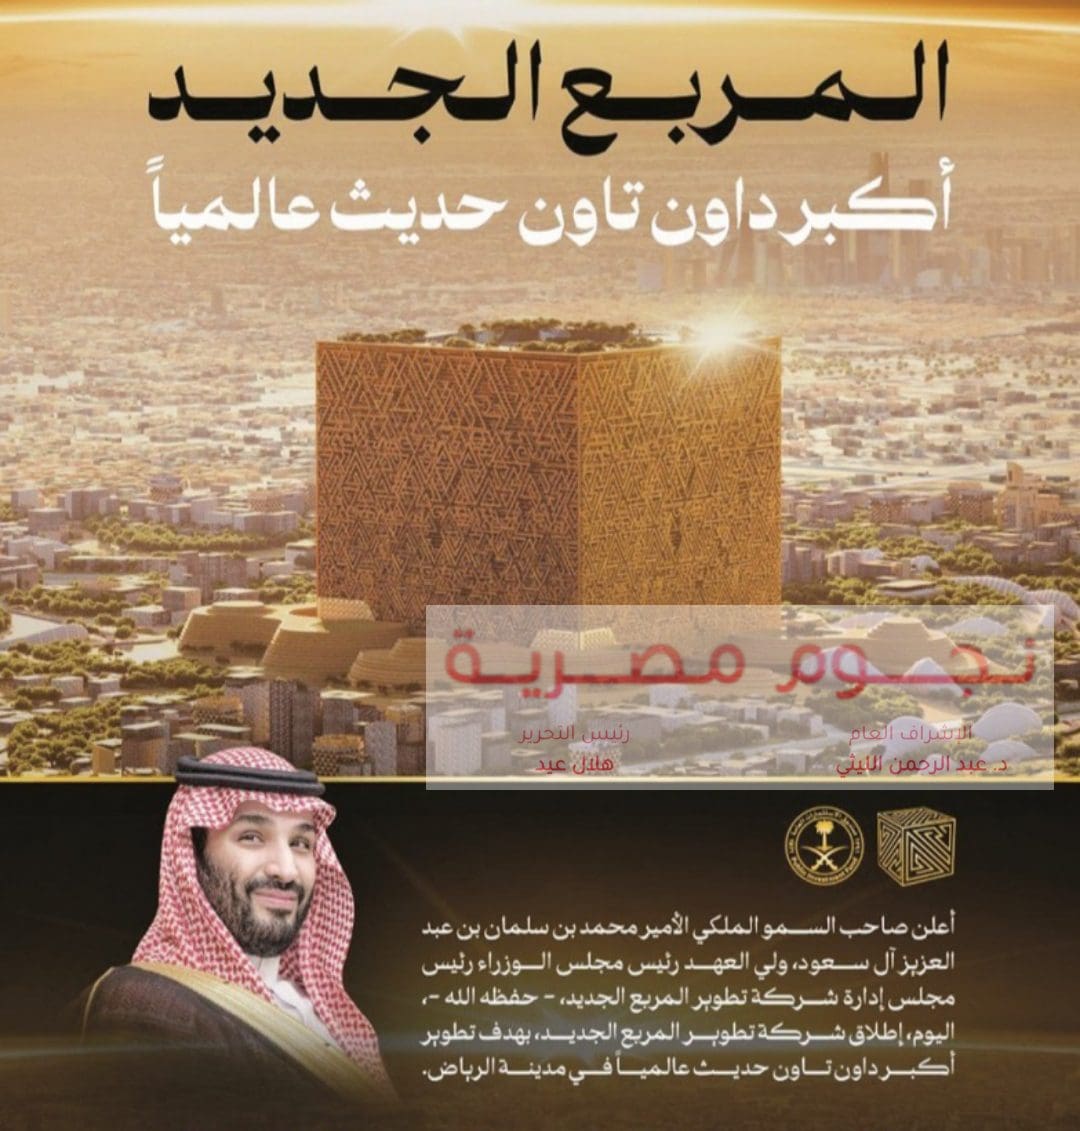 مشروع المربع الجديد داون تاون الرياض